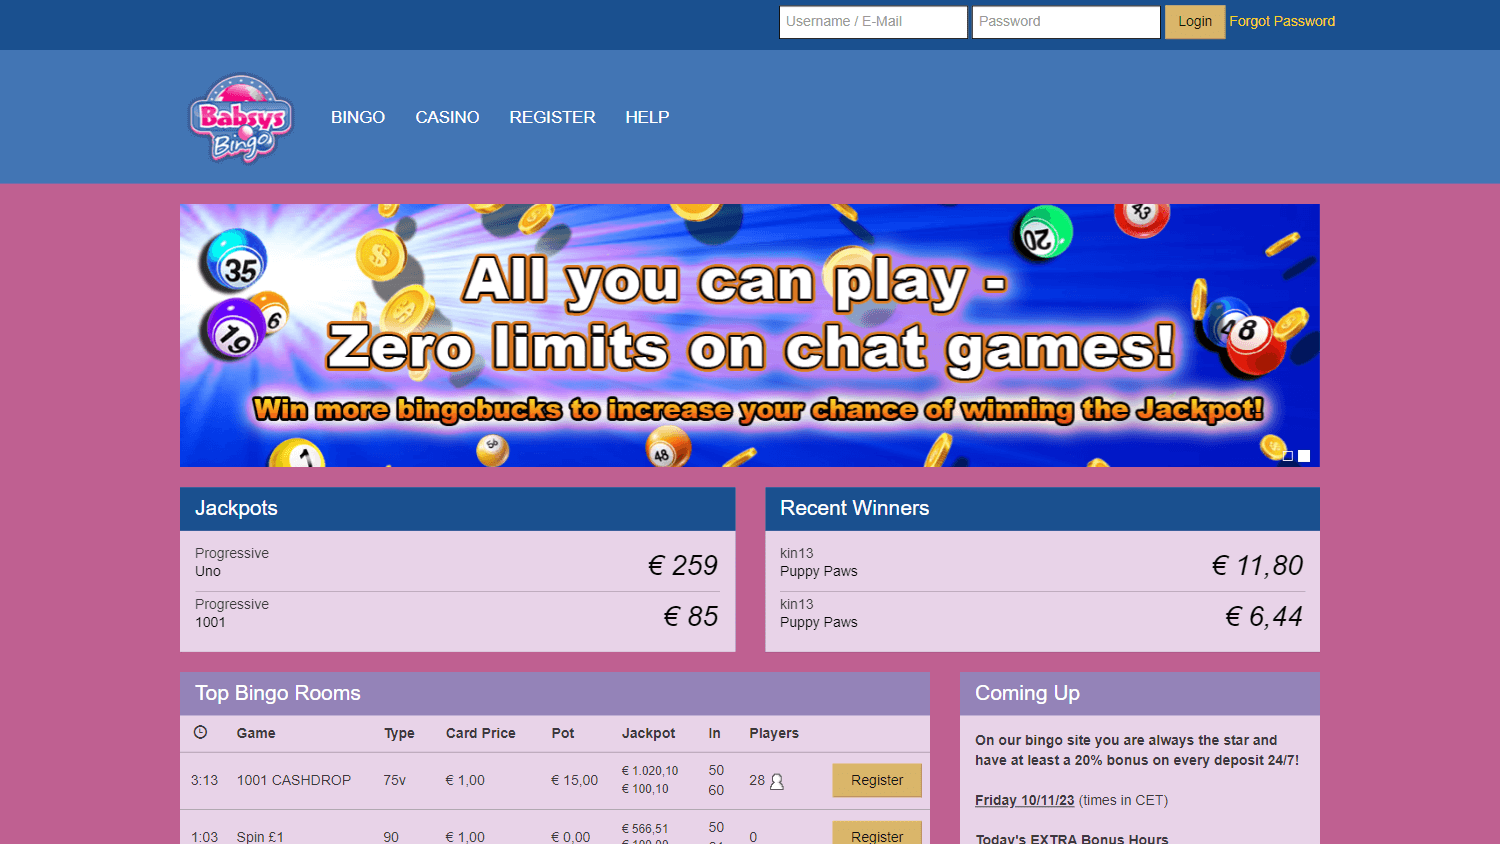 babsysbingo_casino_homepage_desktop